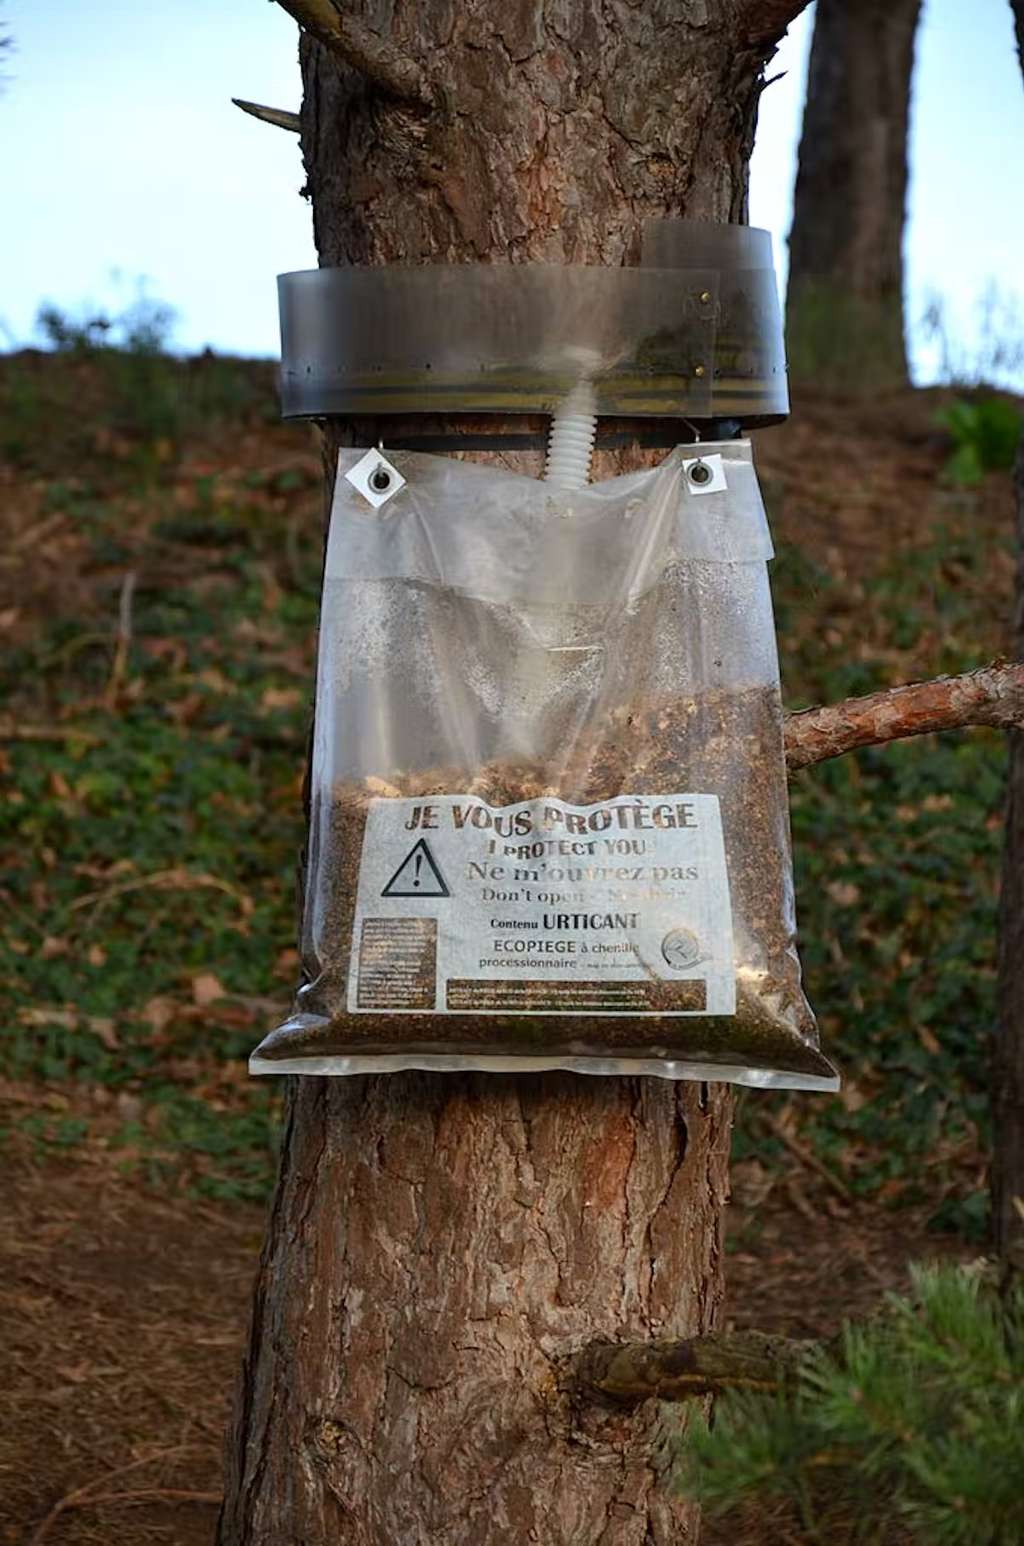 L’installation de piège en gouttière autour des troncs des arbres colonisés permet d’intercepter les chenilles lors de leur descente. © DC, CC by-sa